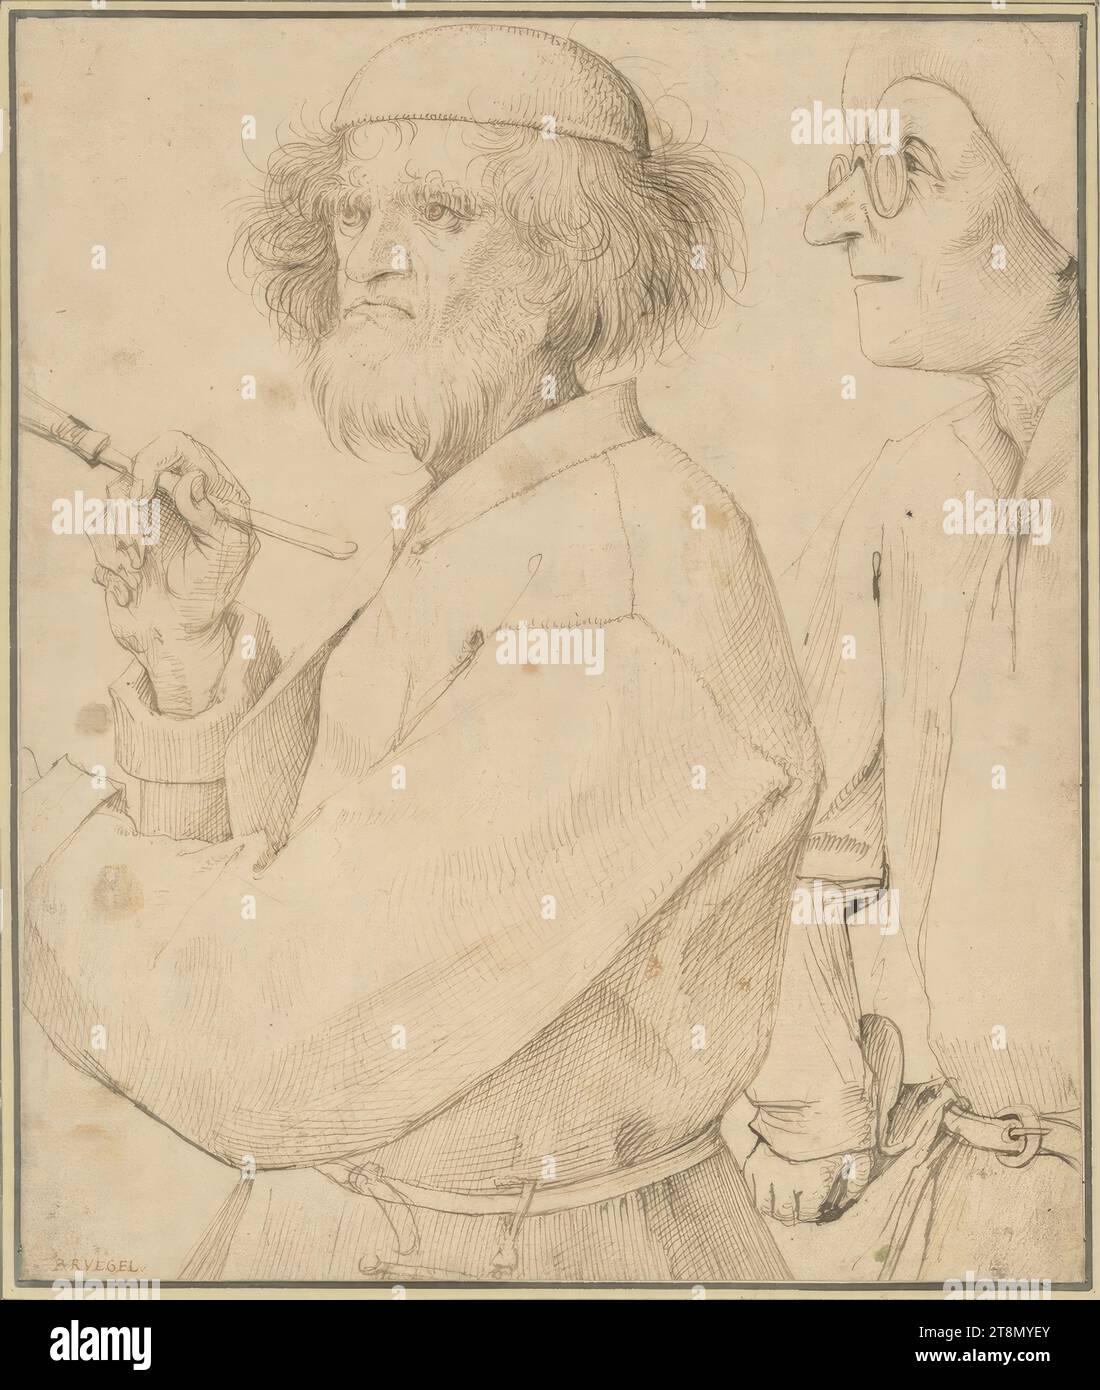 Maler und Käufer, Pieter Bruegel der Jüngere (Breda?) 1526/27 - 1569 Brüssel), um 1566, Zeichnung, Stift und Tusche in Braun, 25,5 x 21,5 cm, l. l. l. Herzog Albert von Sachsen-Teschen, l.u. von jemand anderem Hand geschrieben: 'BRVEGEL Stockfoto